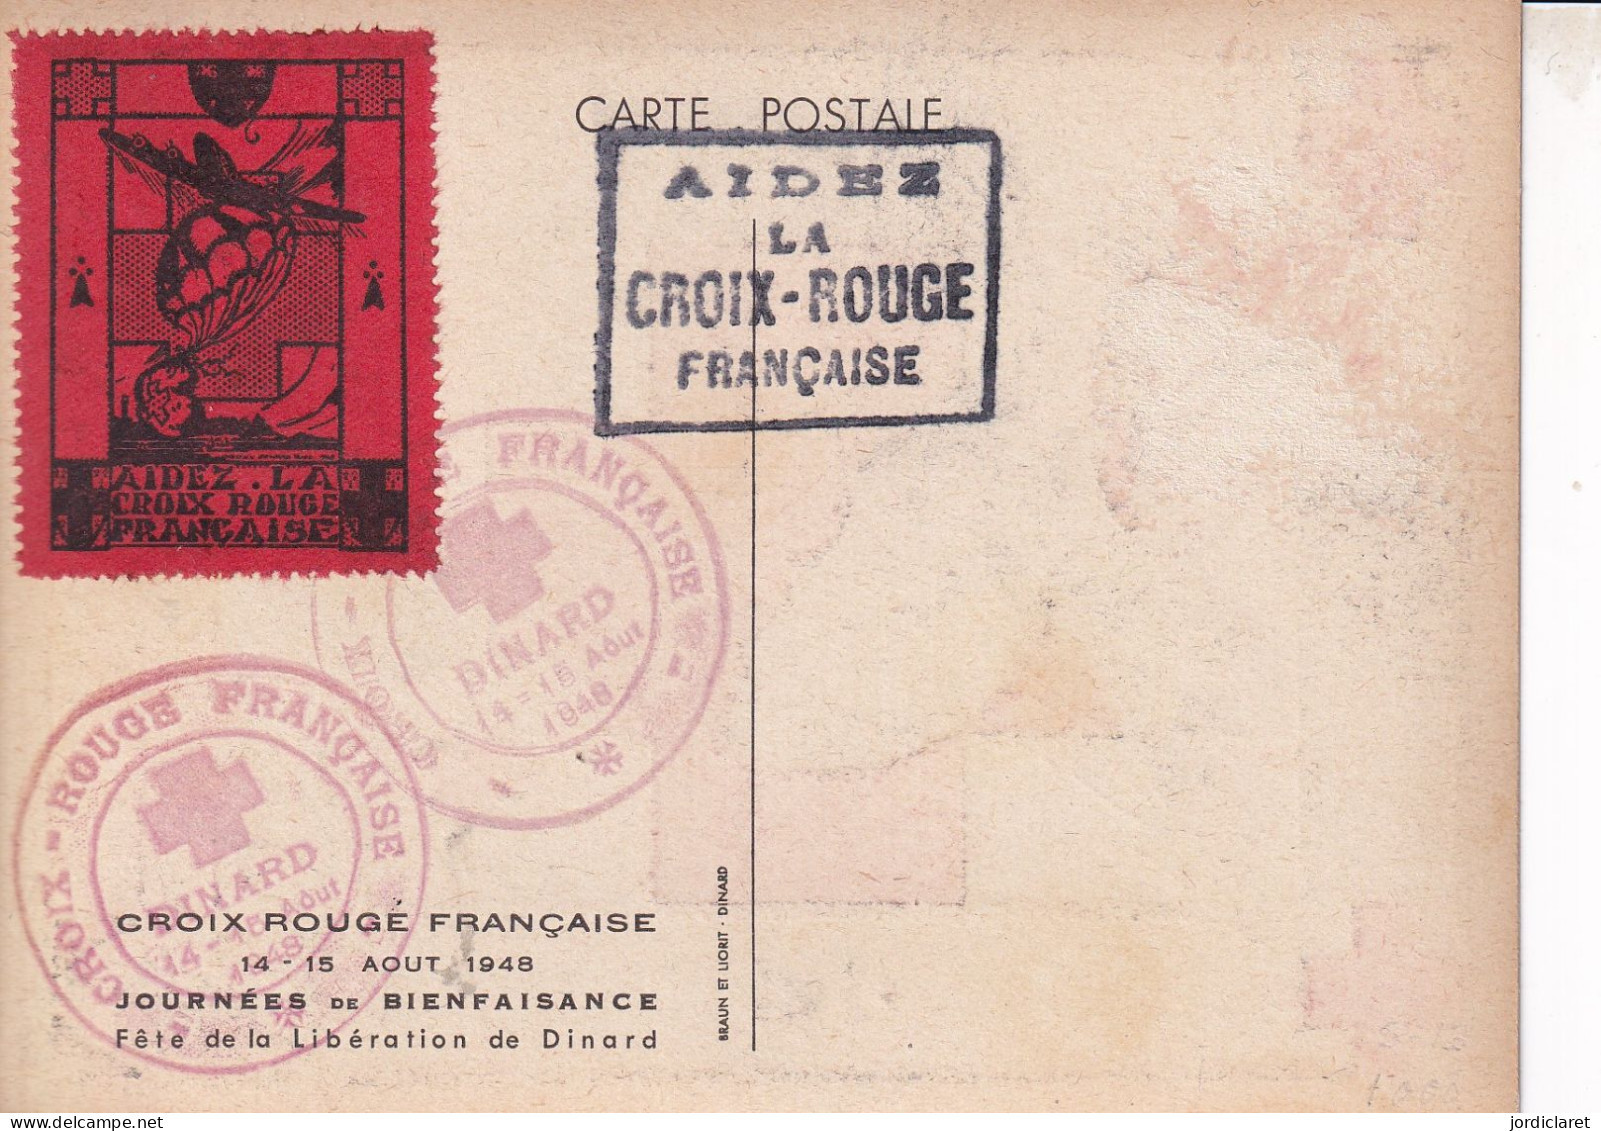 CARTE POSTALE 1948  AIDEZ LA CROIX-ROUGE  FRANCIA - Red Cross